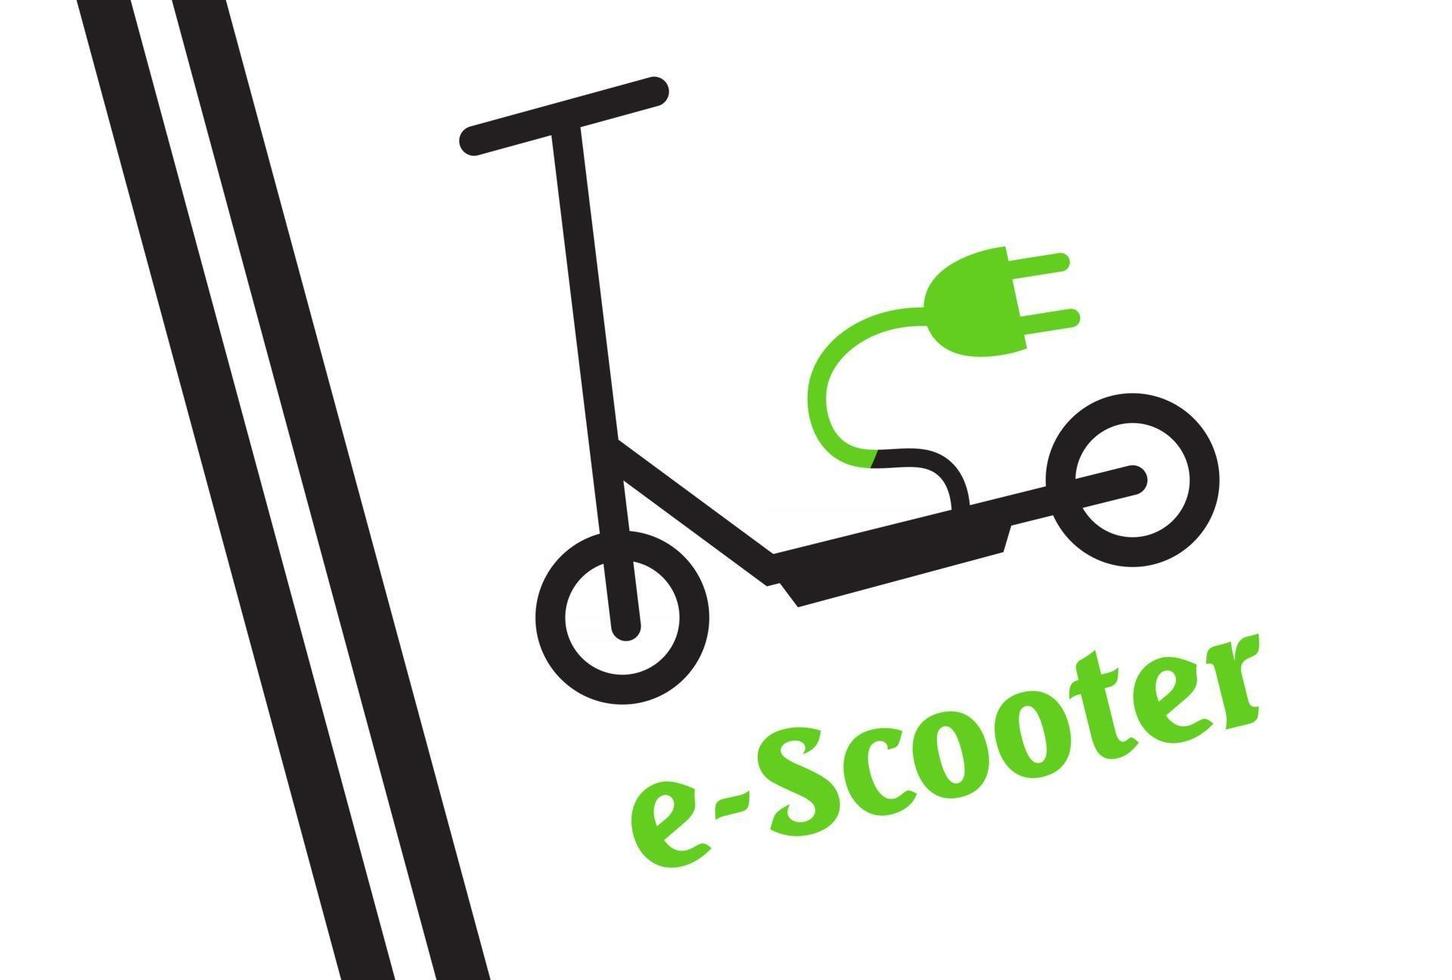 parcheggio scooter - parcheggio segnalato per scooter. segno di scooter. vettore